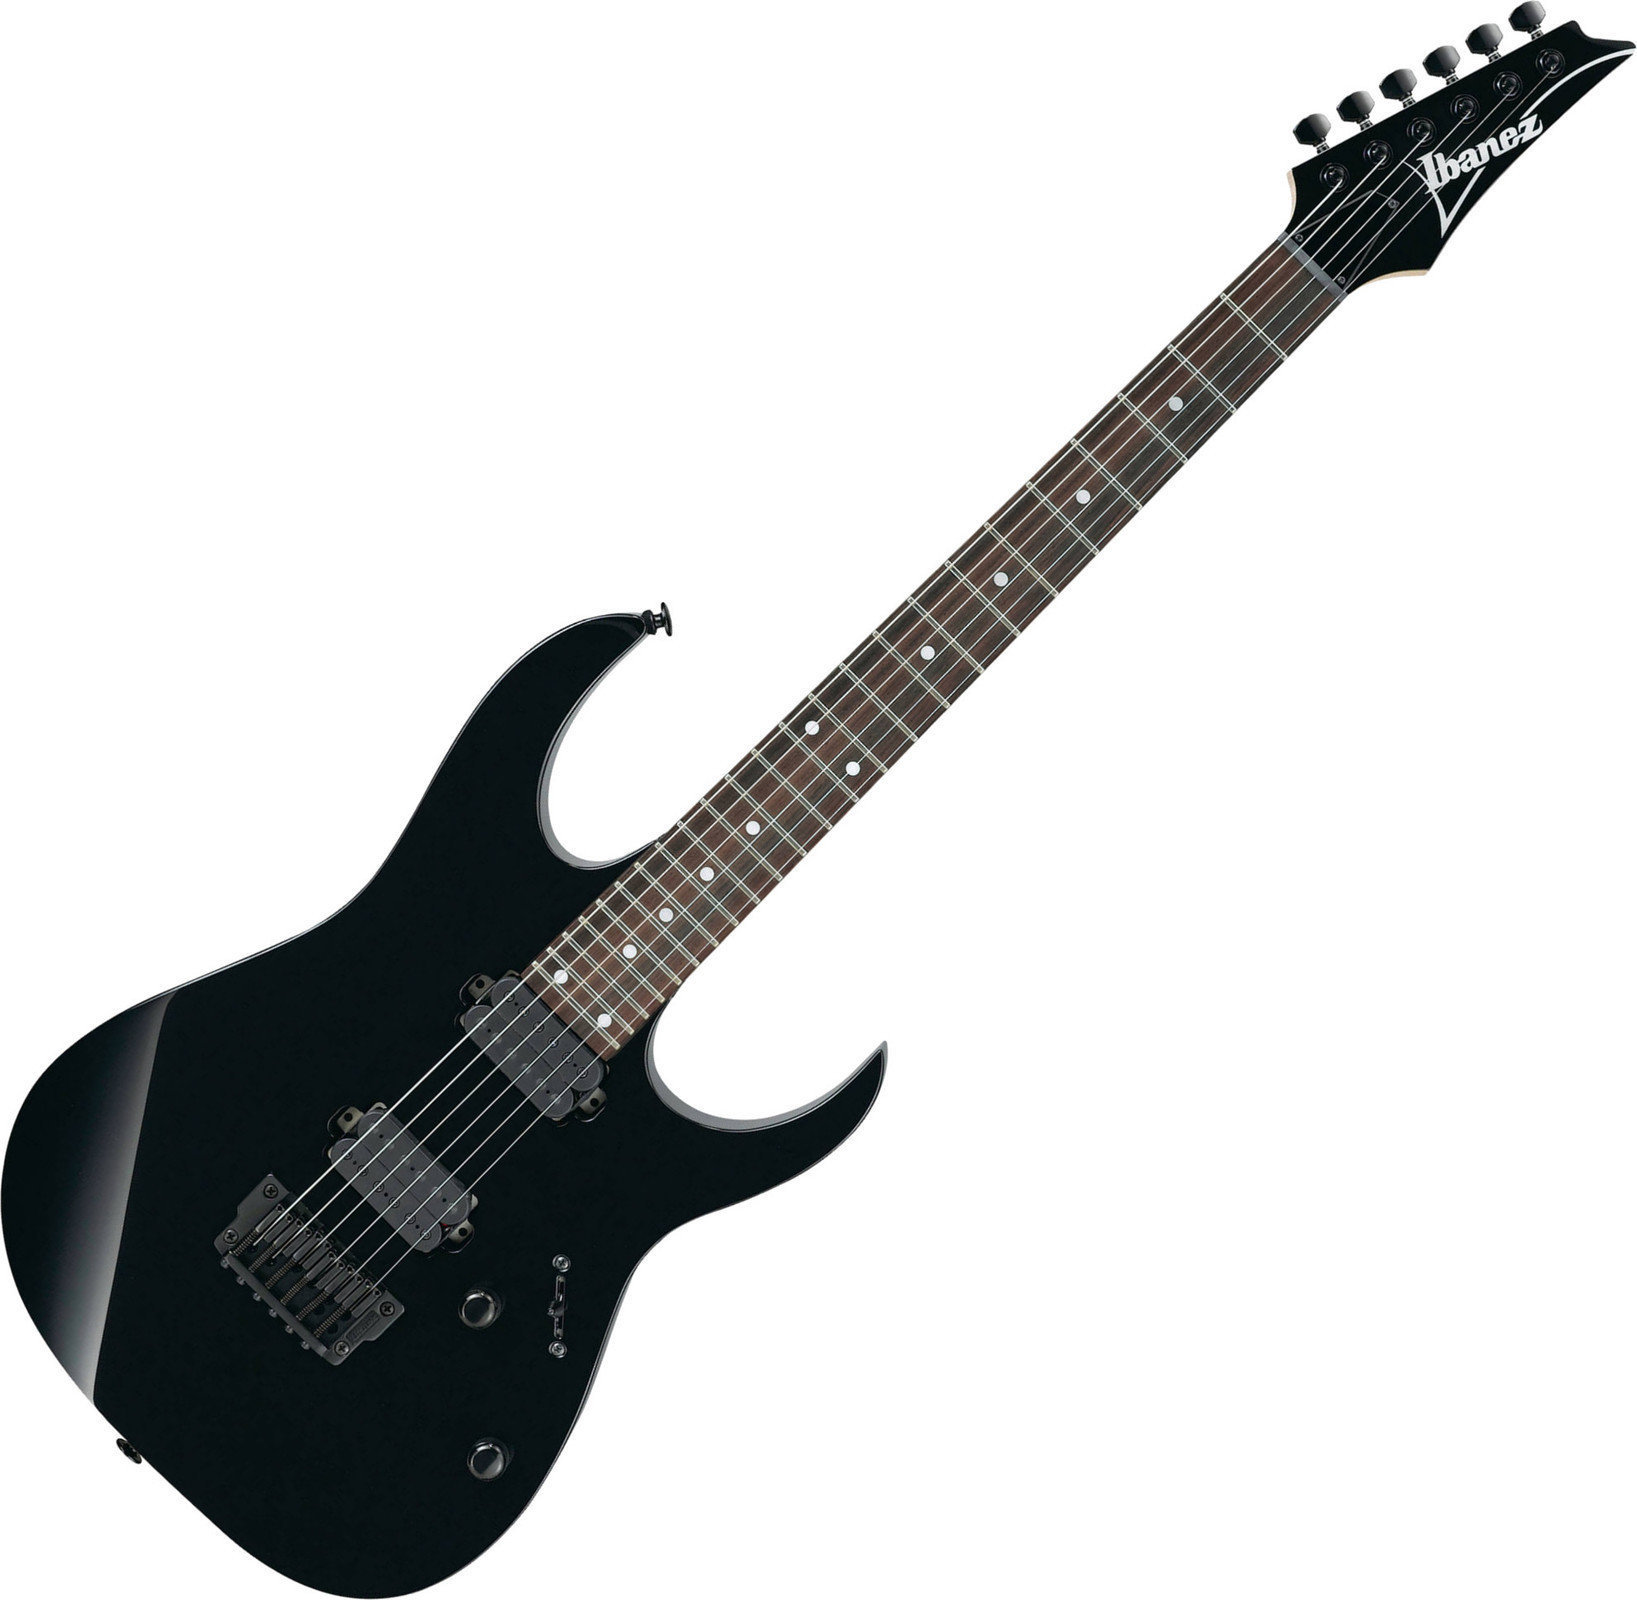 Electric guitar Ibanez RG521 Black